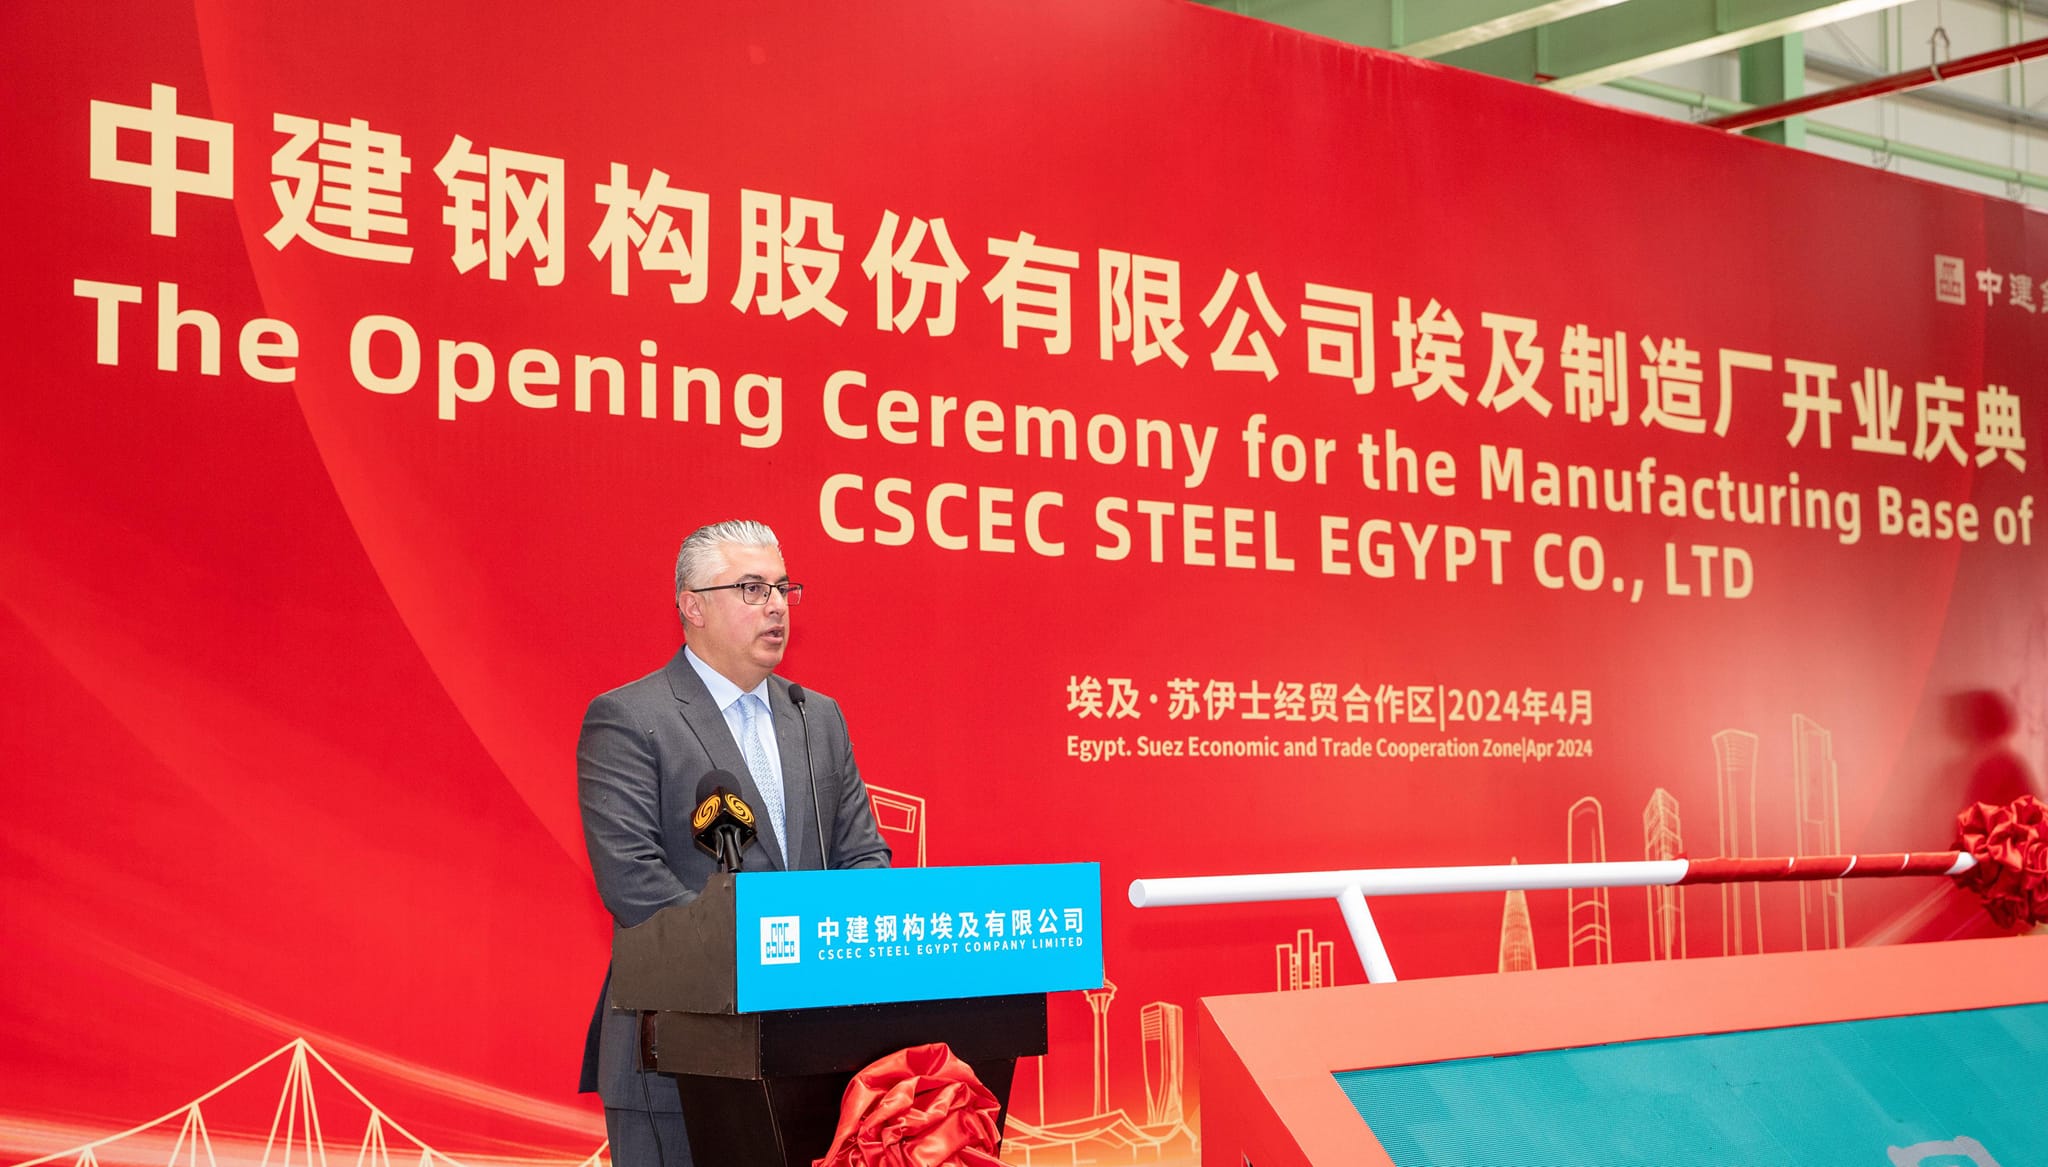 اقتصادية القناة تشهد مراسم افتتاح مصنع لتصنيع الهياكل الفولاذية.. باستثمارات 87.4 مليون يوان صيني